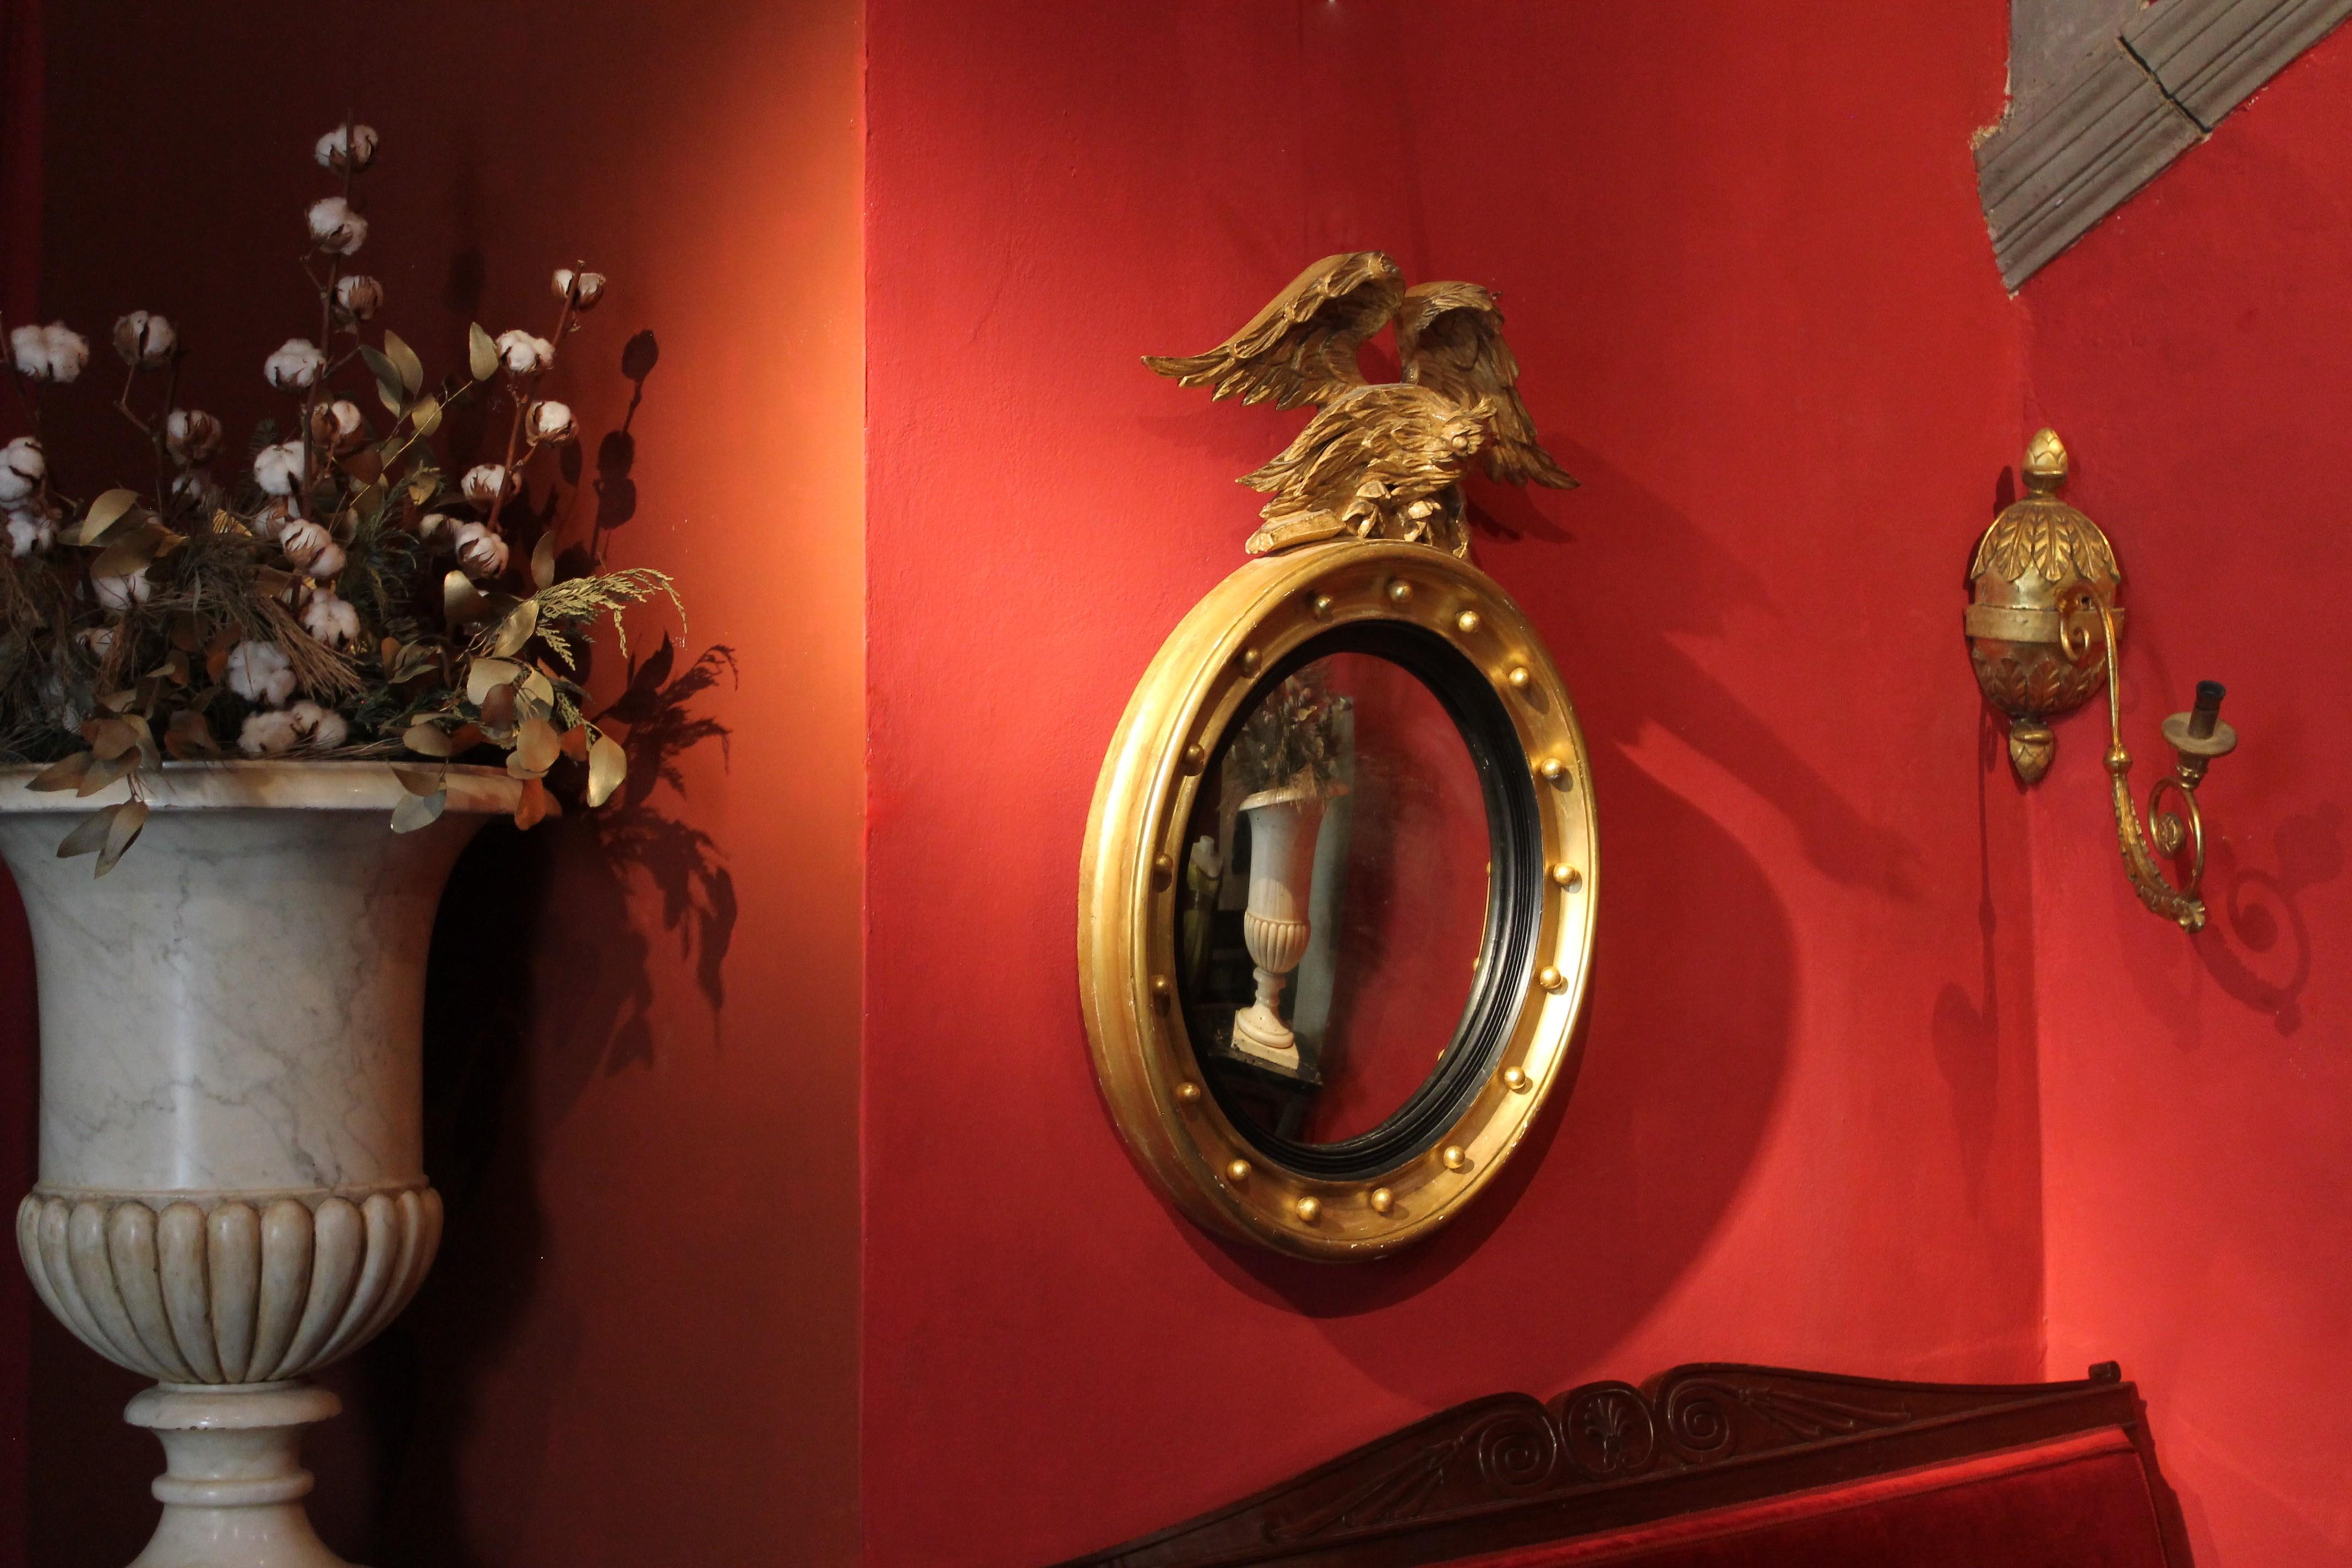 Cet antique miroir mural italien du début du 19ème siècle, de forme ronde et convexe, avec sa plaque de miroir au mercure d'origine, est logé dans un cadre en bois doré et ébénisé surmonté d'un fronton d'aigle en bois doré sculpté à la main. C'est